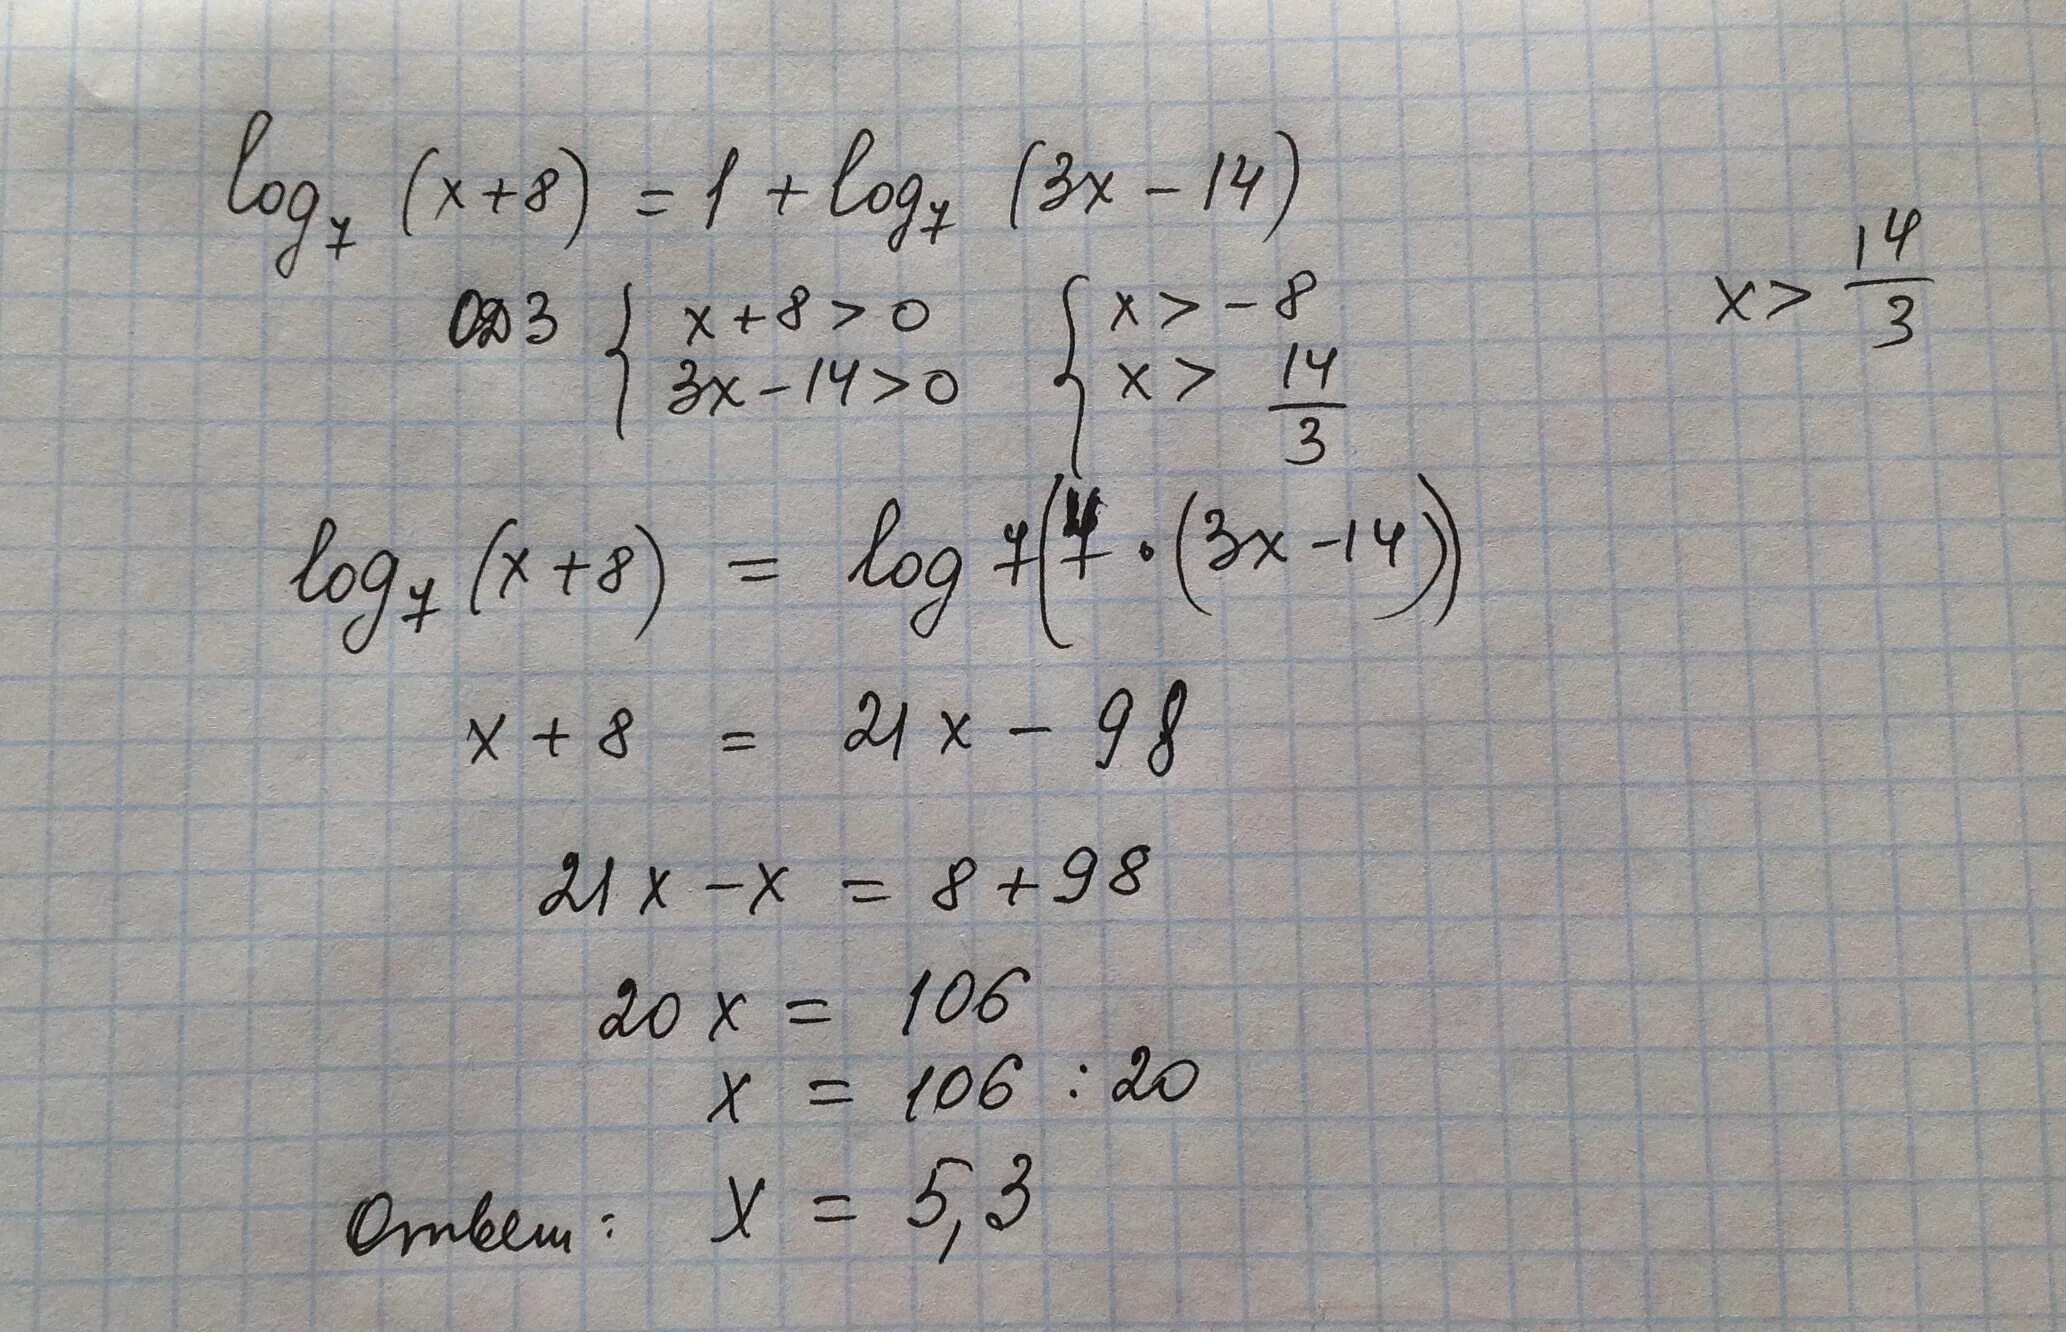 Х log 3 x. Log3(x-7)<3. Log2(7-х)=2log8 3. Log3(x+3x-7)=1. 7/X+8 -1.